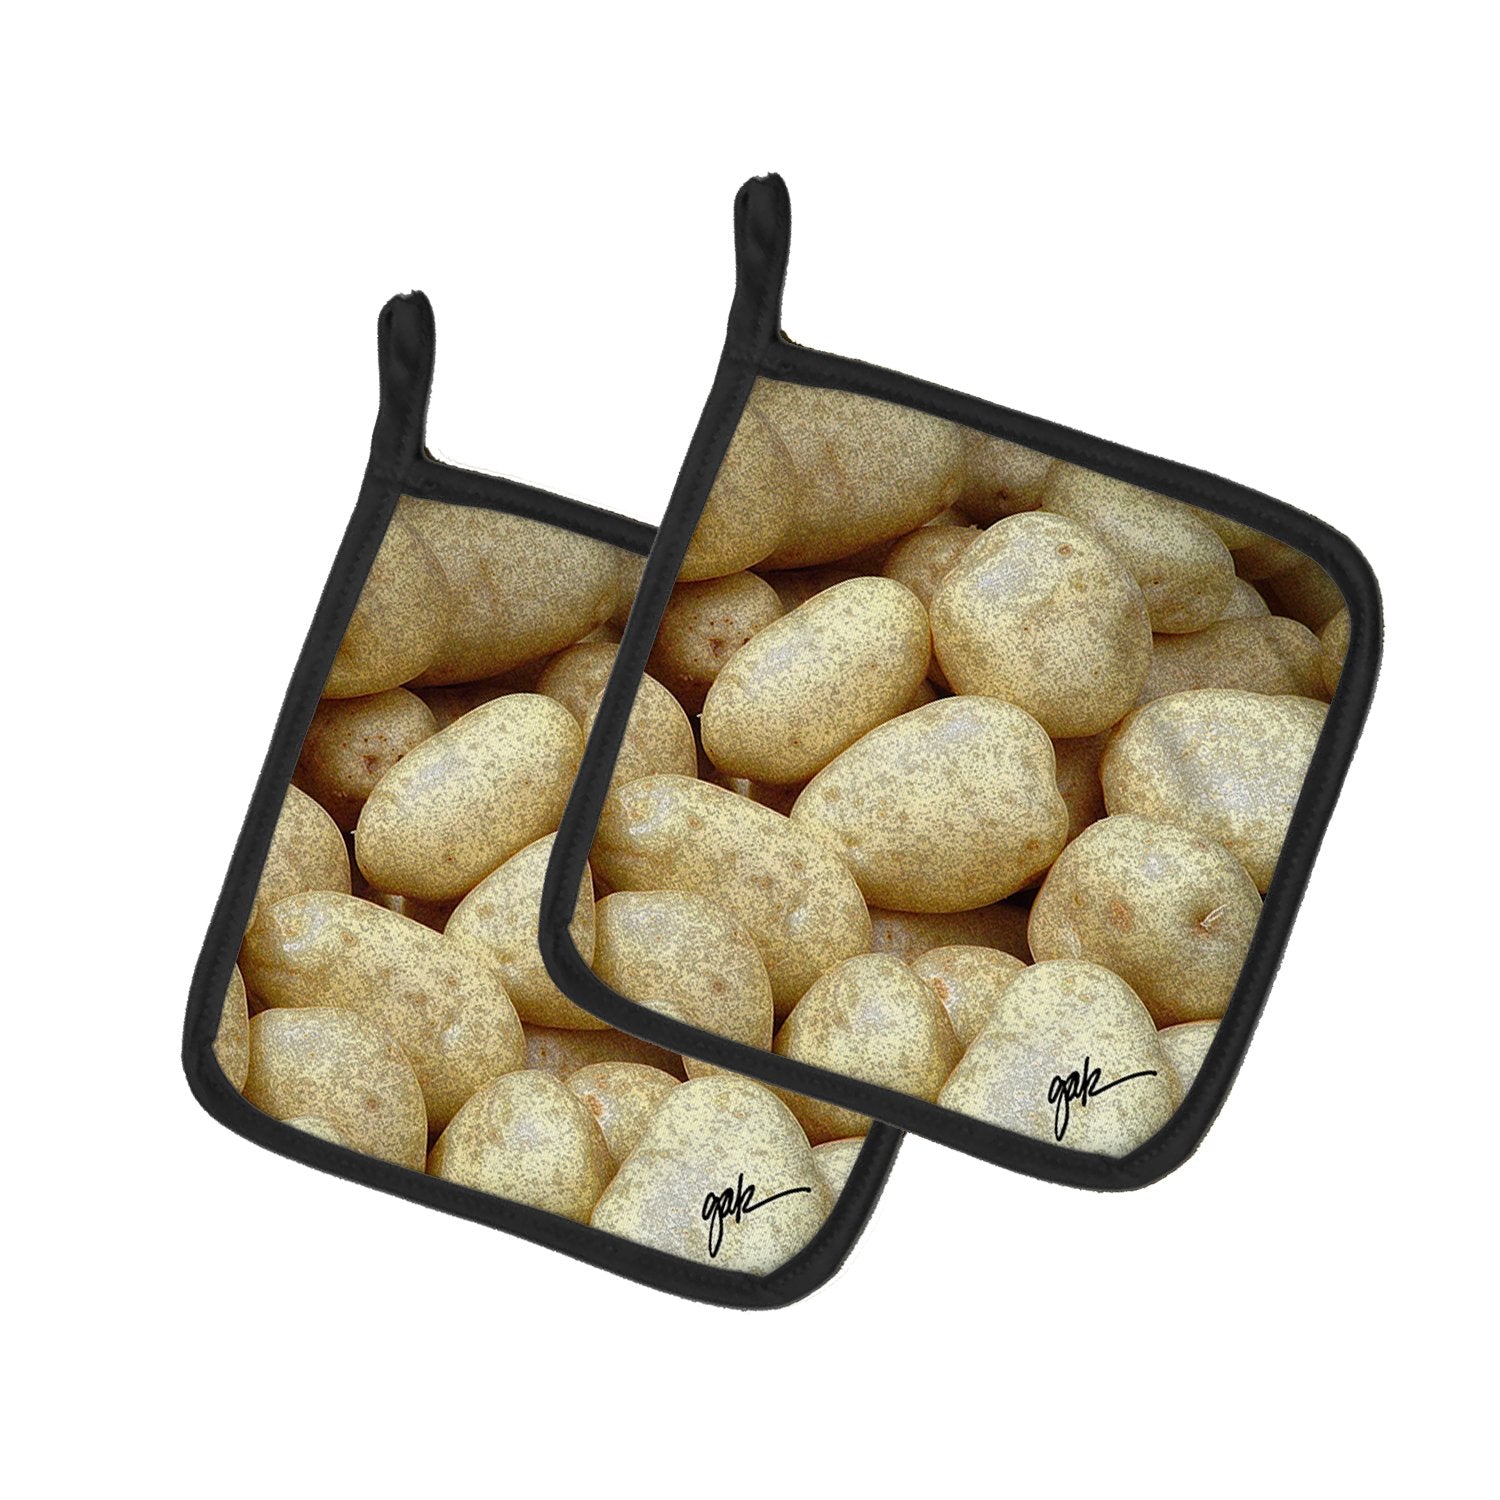 Buy this Potatoes by Gary Kwiatek Pair of Pot Holders